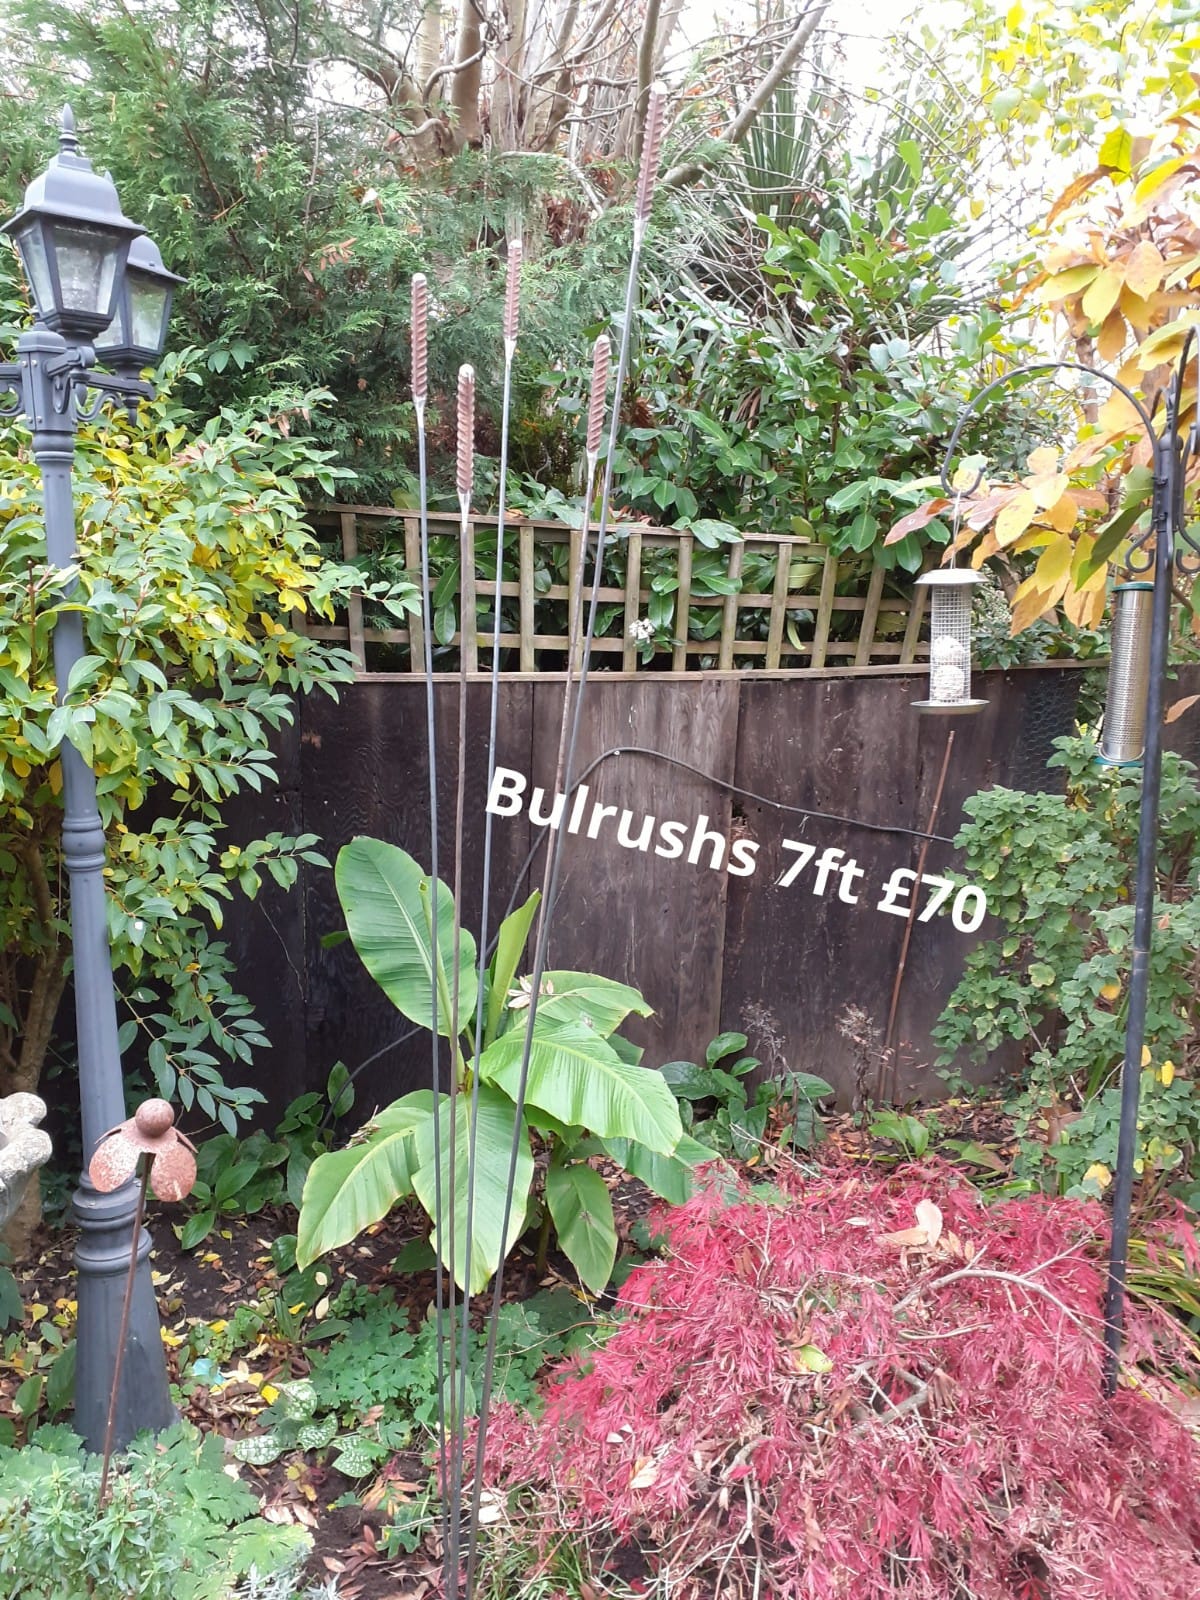 Bulrushes 7ft - £70